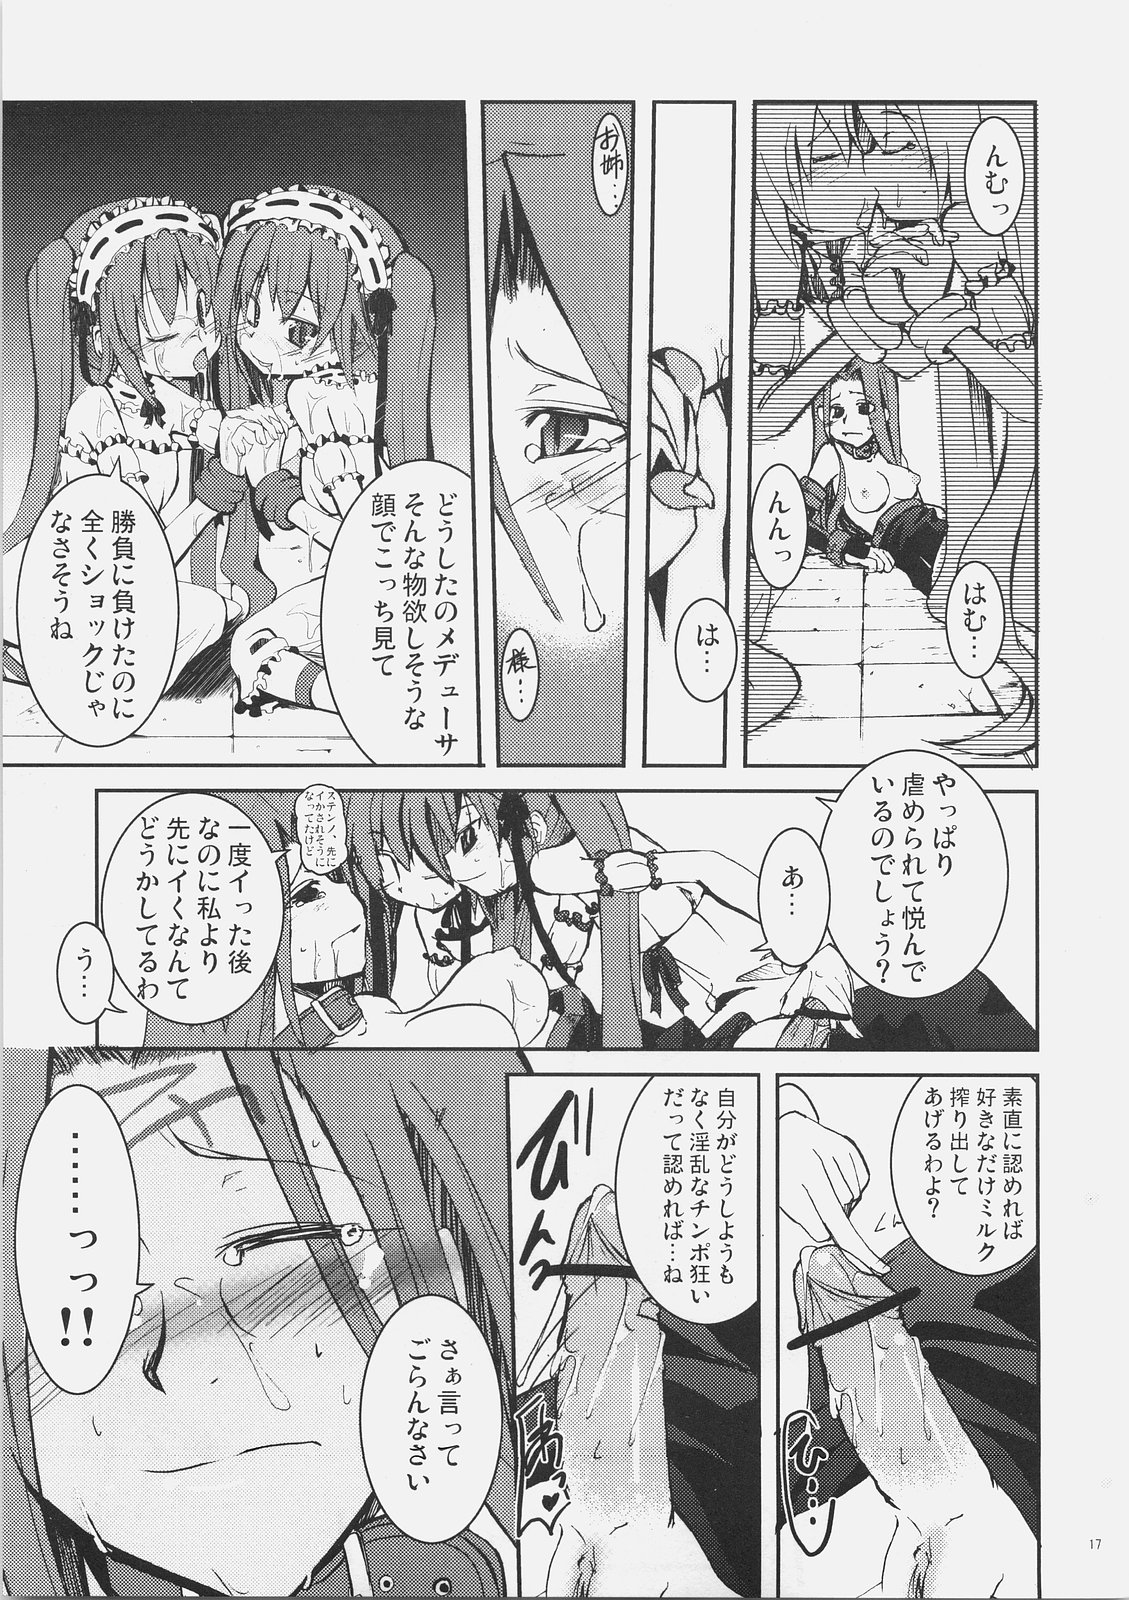 (SC32) [MASULAO MAXIMUM (Kazekawa Nagi)] Candy cutie sadist (Fate/stay night) page 16 full